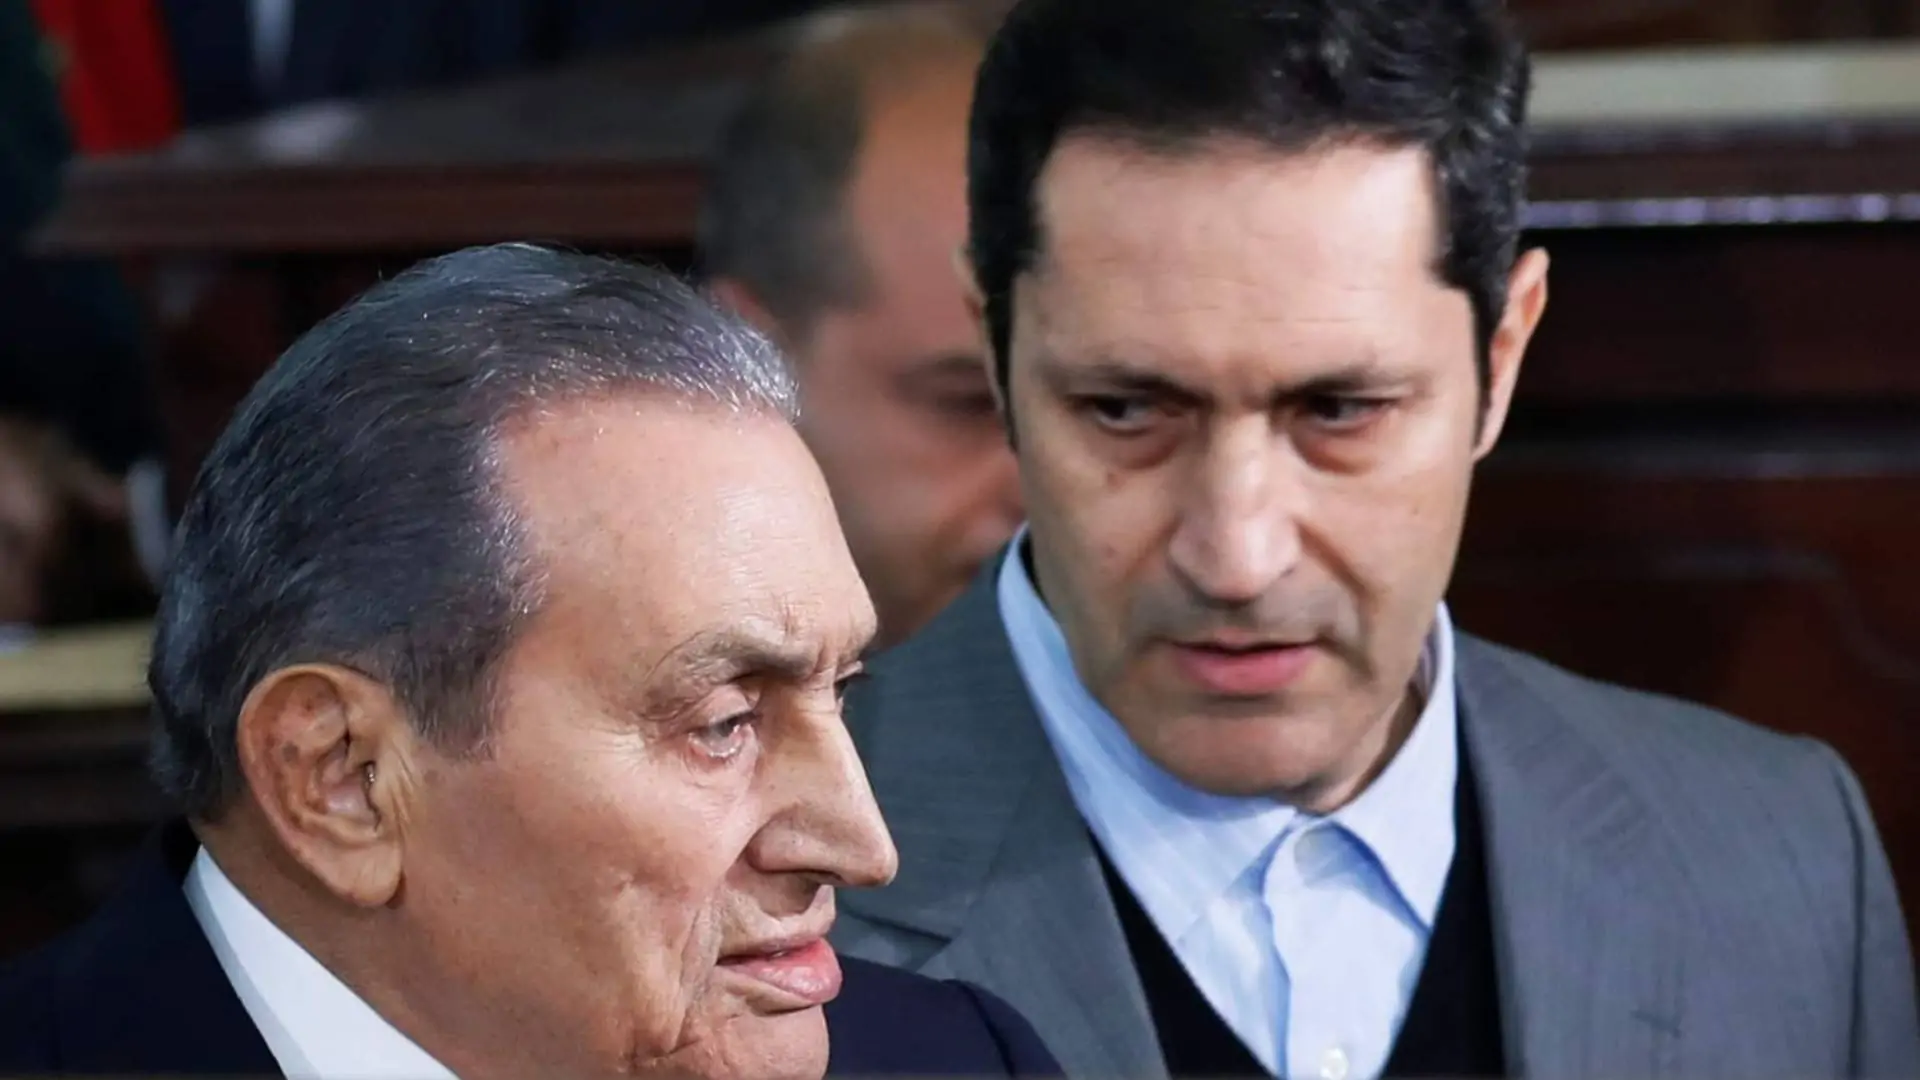 علاء مبارك يستغل طغيان السيسي لتلميع صورة والده: "ثورة ايه بس"